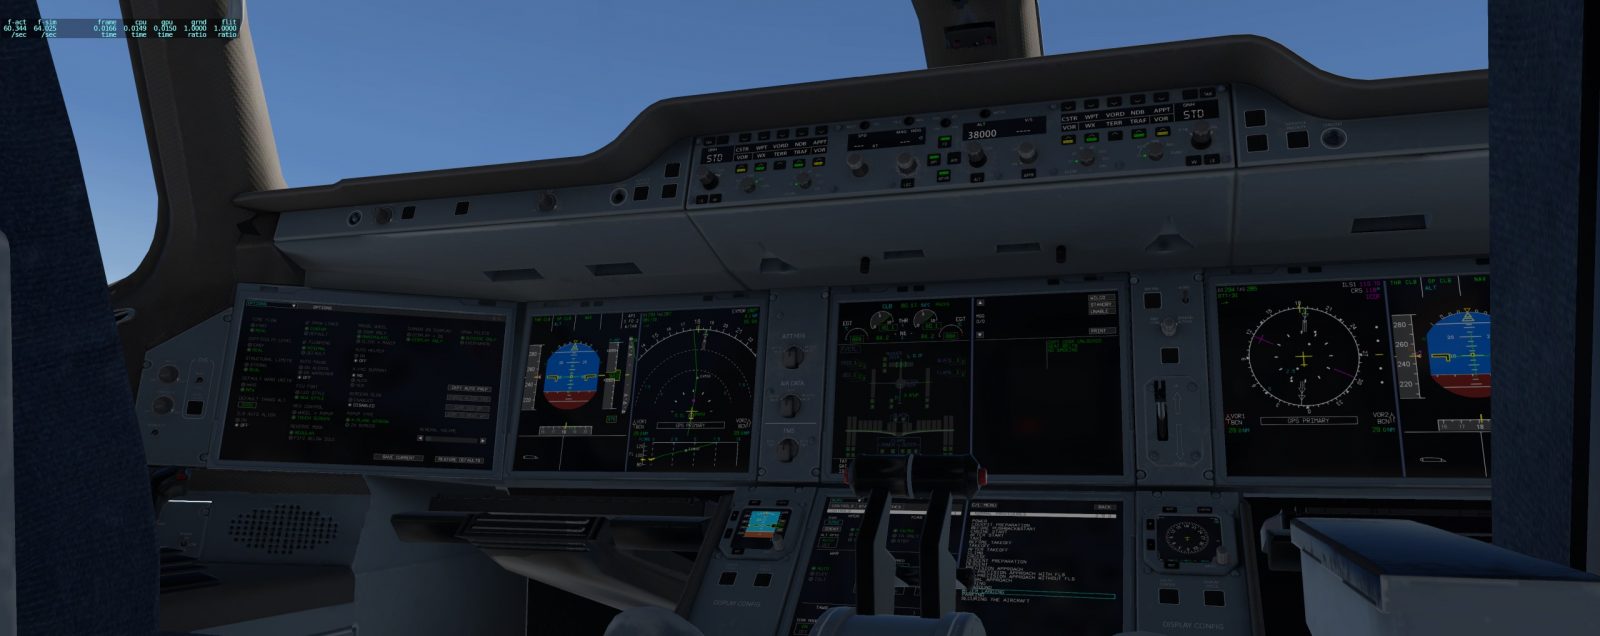 A350驾驶舱-8639 